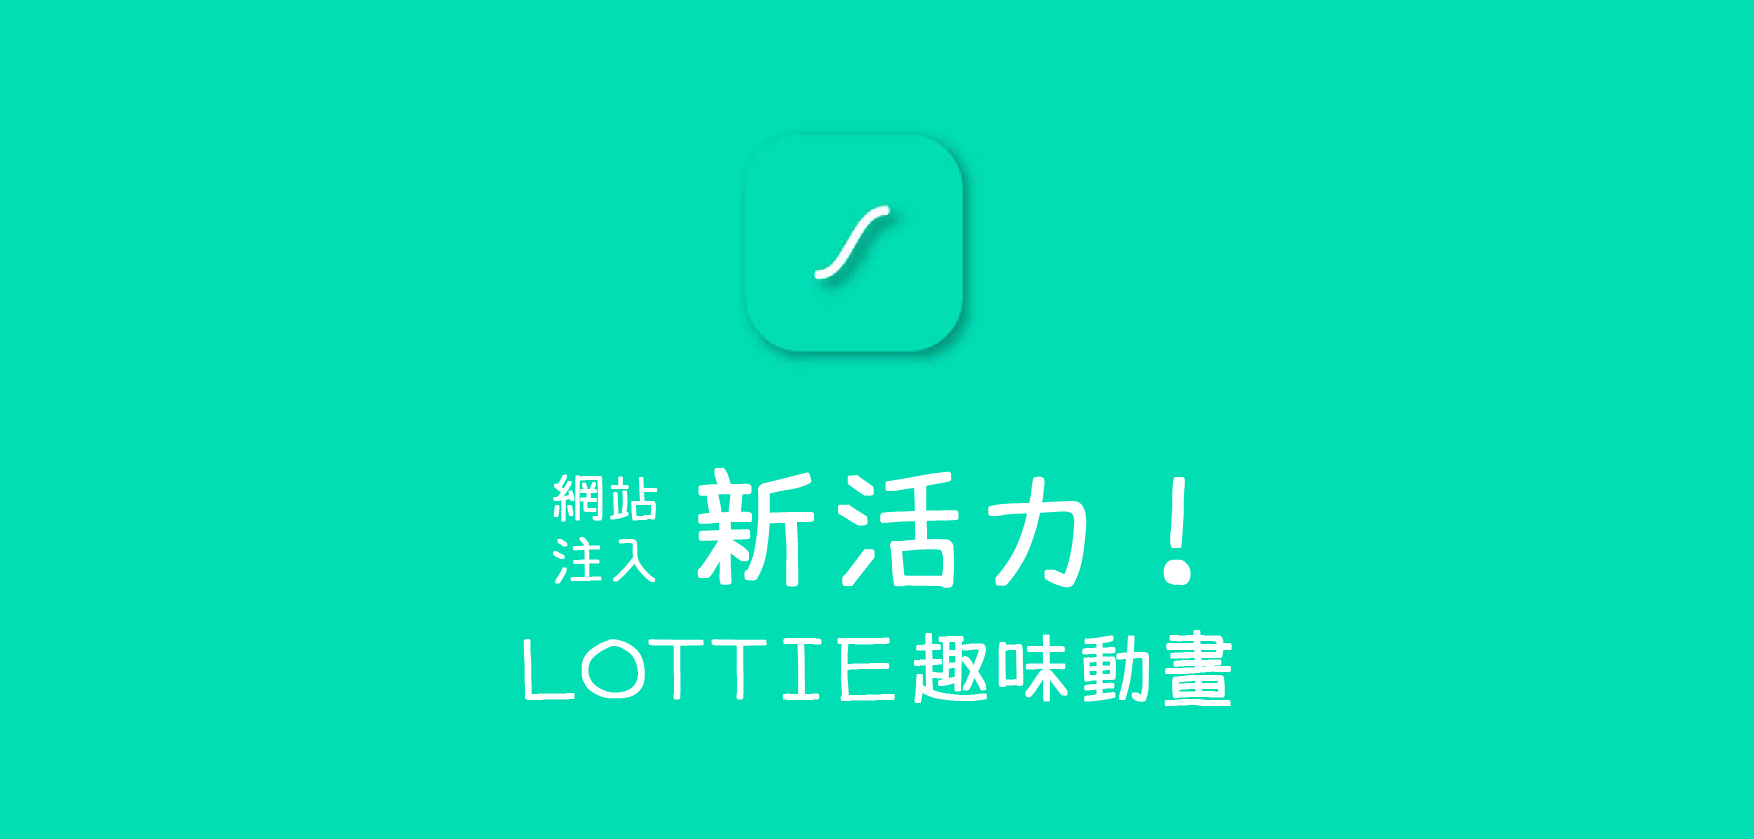 lottie-banner(1)